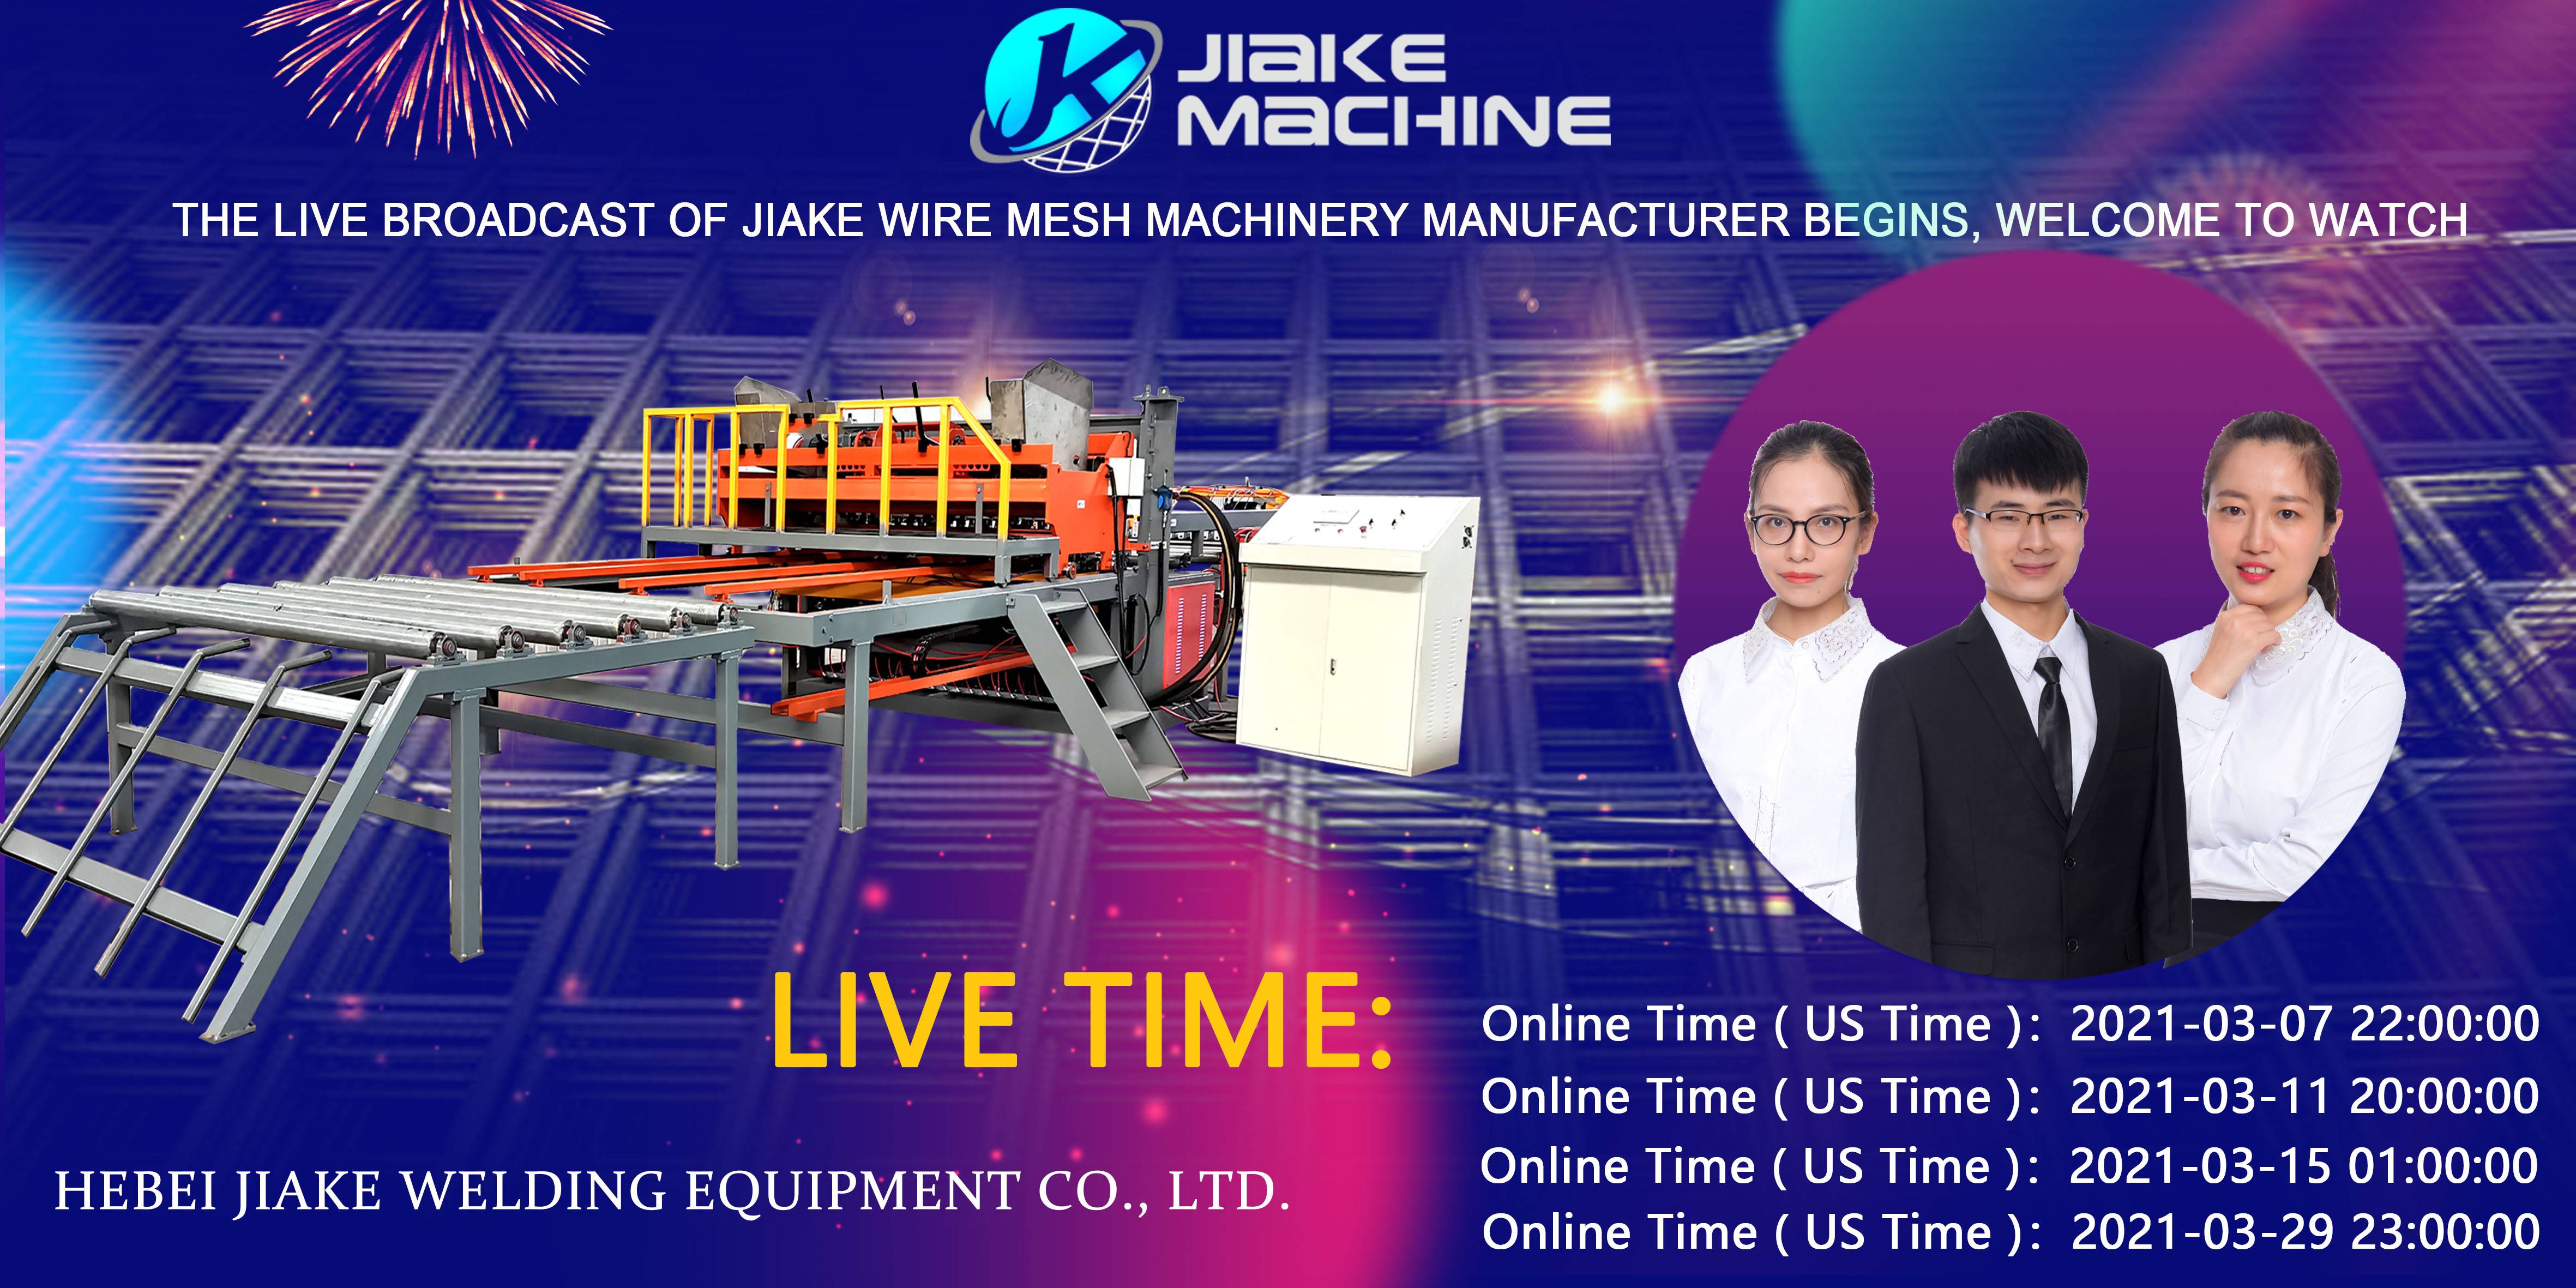 Jiake Wire Mesh Machinery හි සජීවී විකාශනය මාර්තු මාසයේදී පැමිණේ, නැරඹීමට සාදරයෙන් පිළිගනිමු